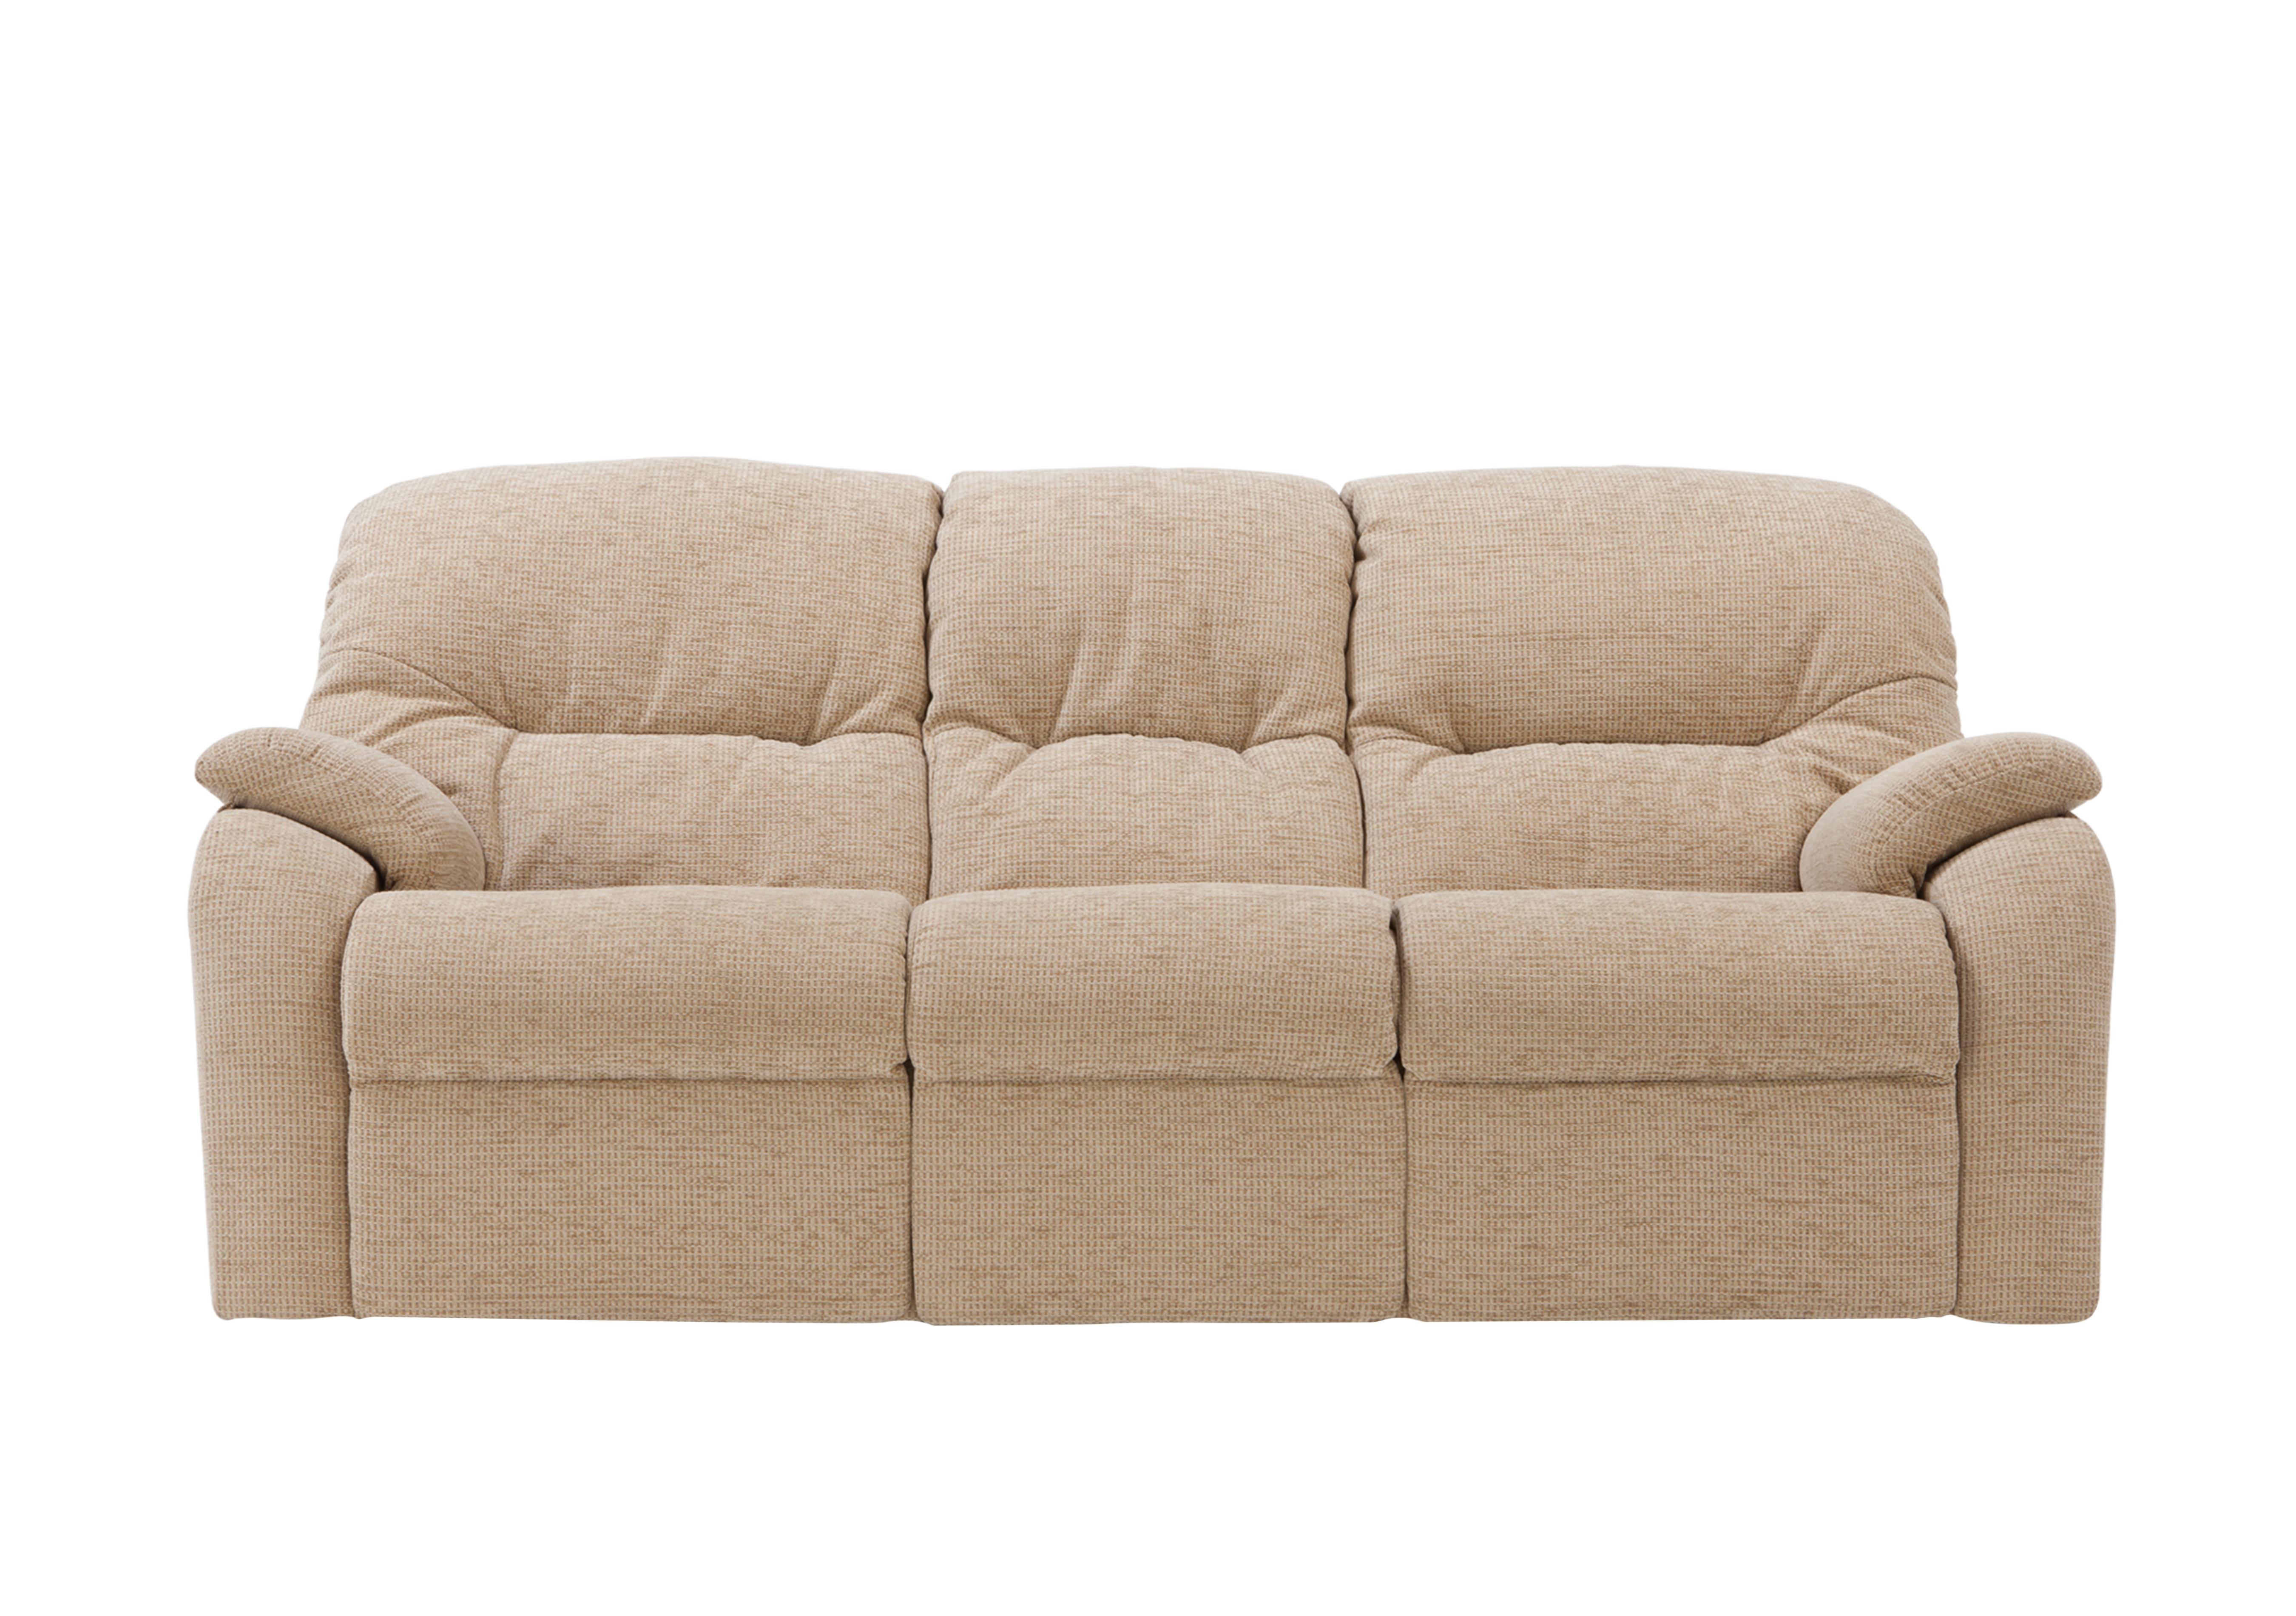 G Plan furniture, sofas &amp; armchairs - Furniture Village